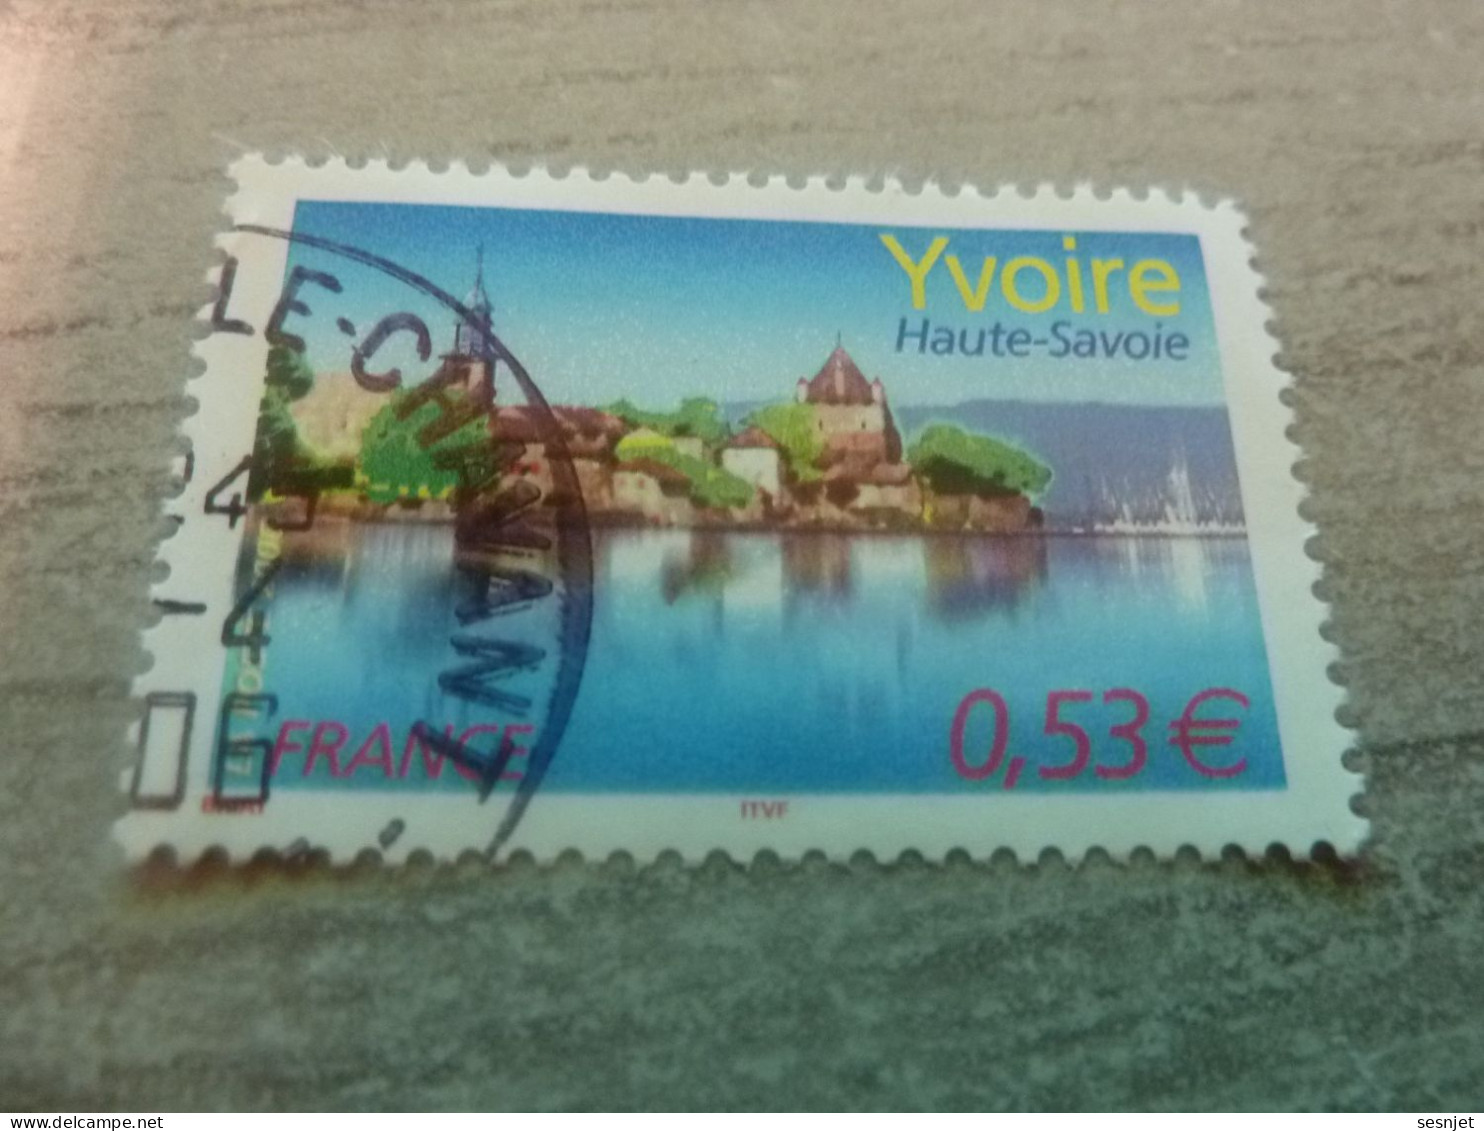 Yvoire - Lac Léman (Haute-Savoie) - 0.53€ - Yt 3892 - Multicolore - Oblitéré - Année 2006 - - Gebruikt